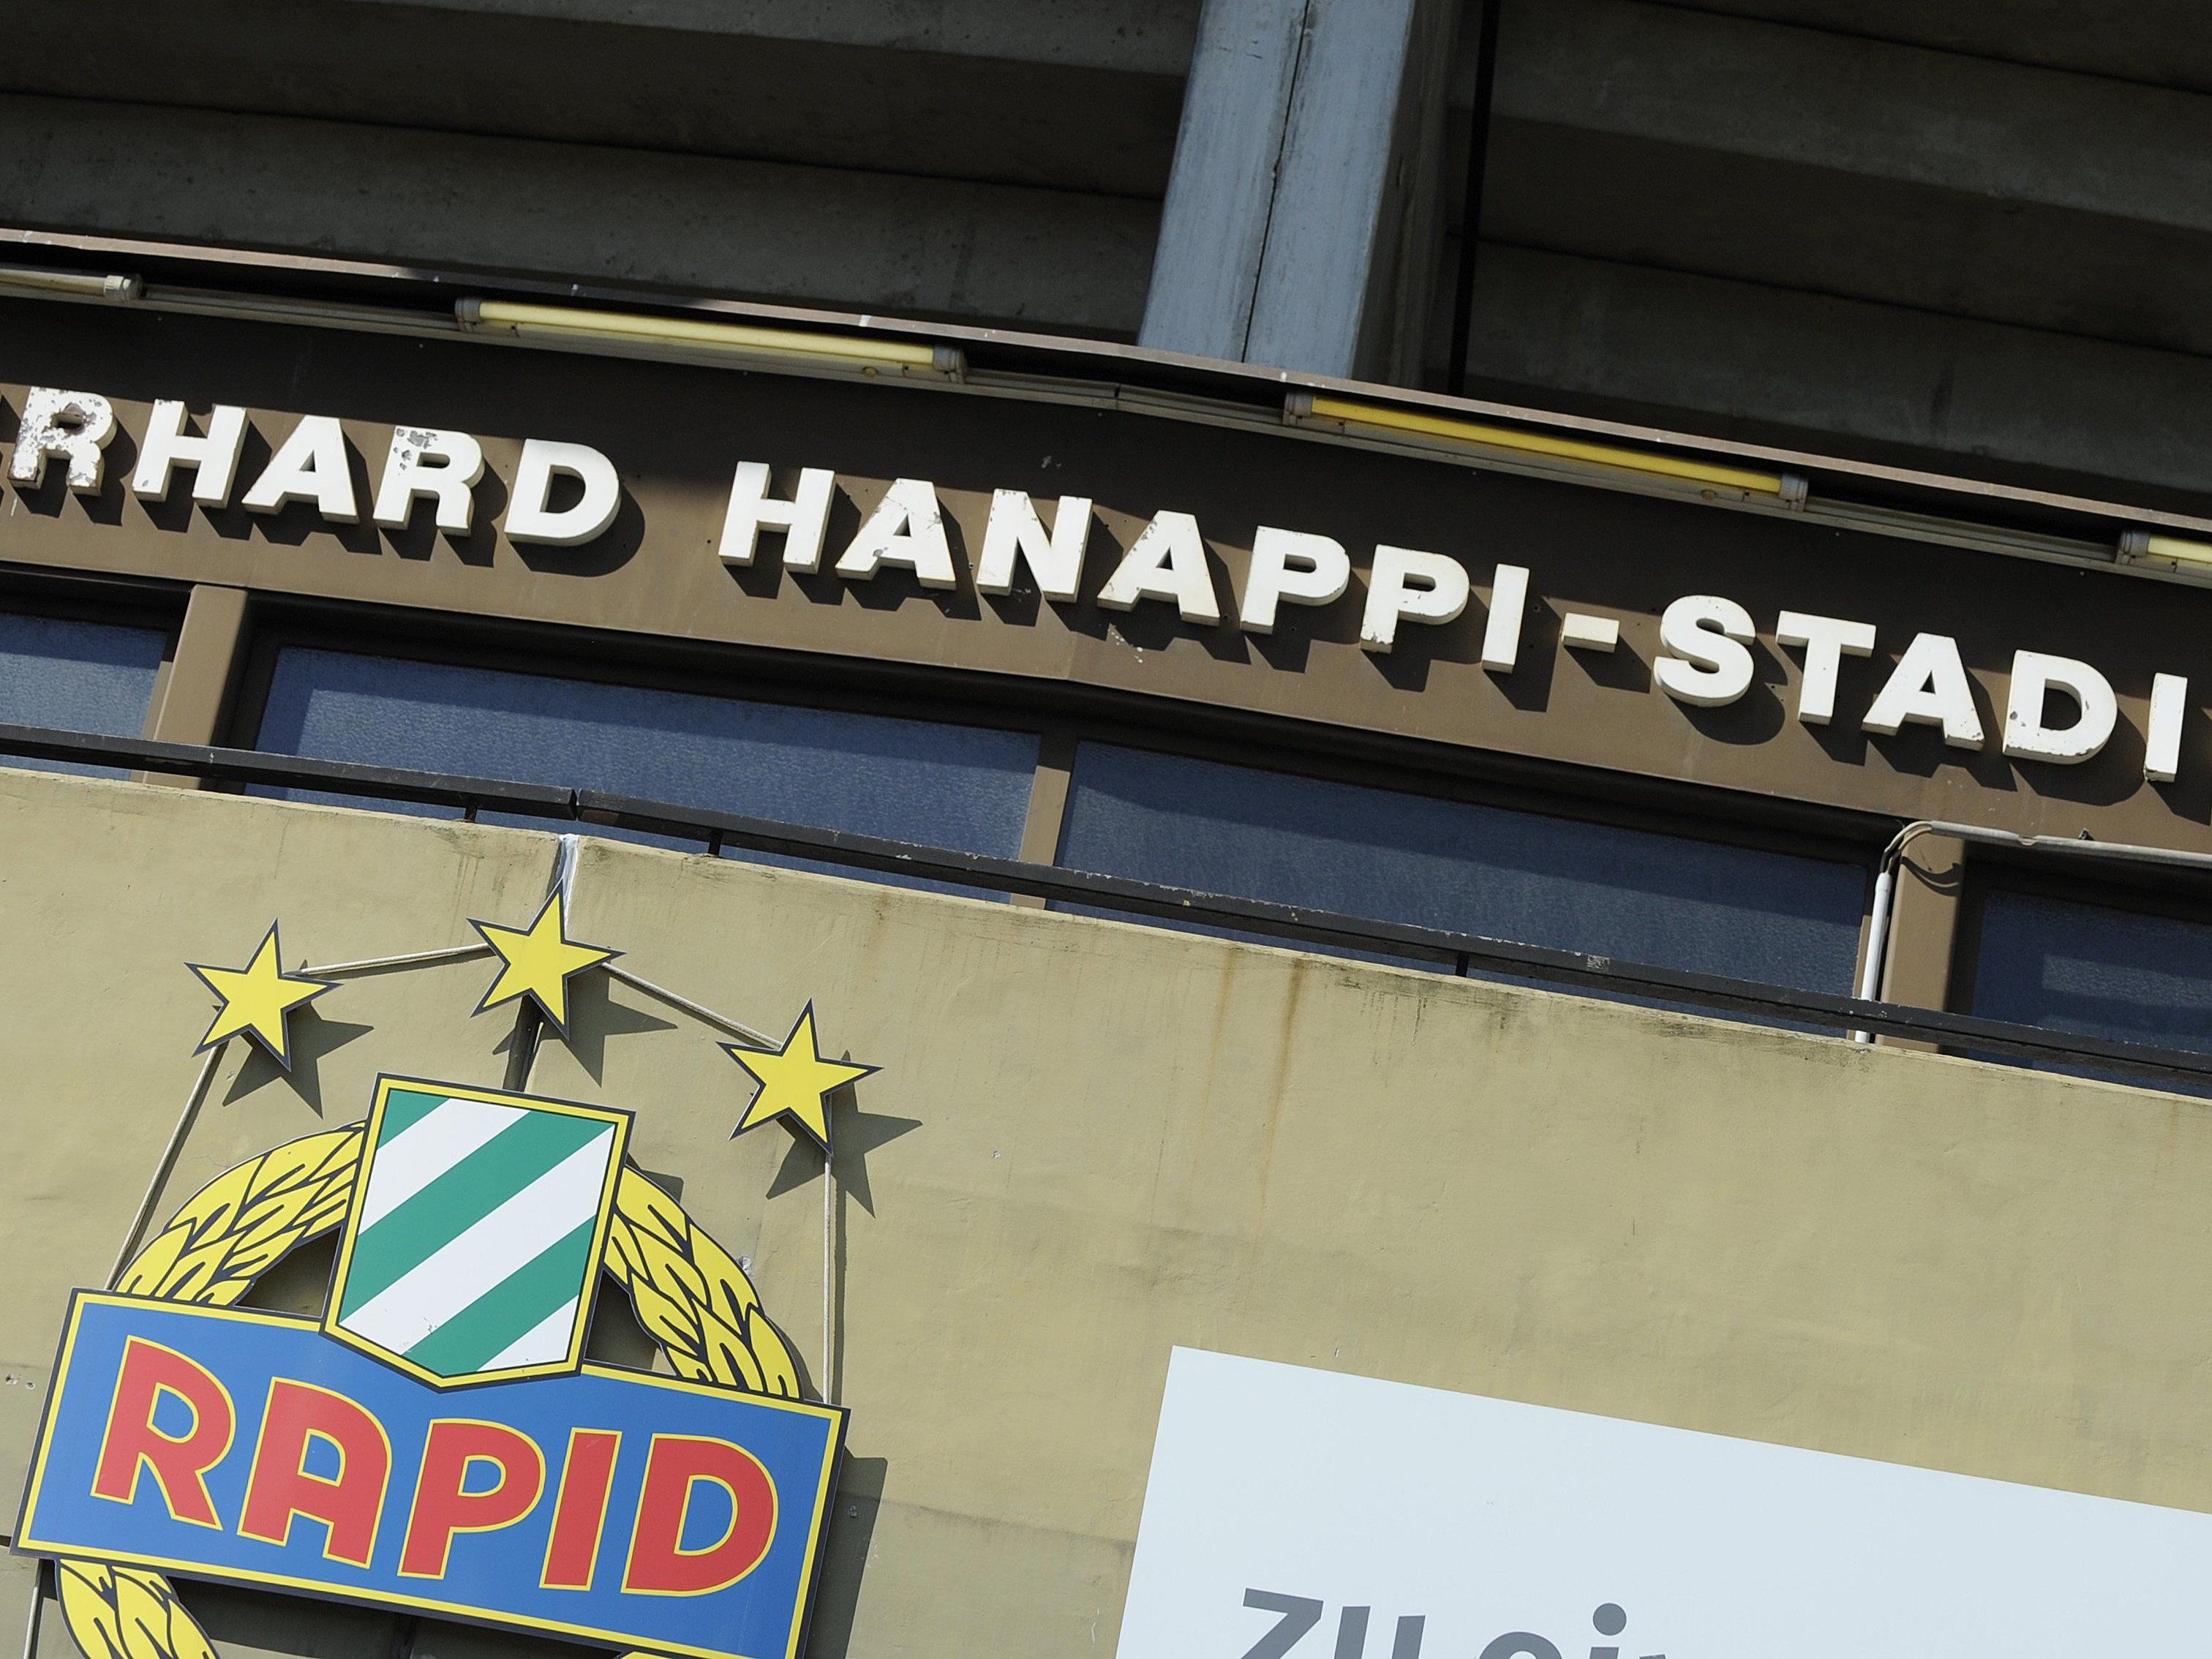 Am 4. Oktober findet im St. Hanappi eine Abrissparty für Rapid-Fans statt.